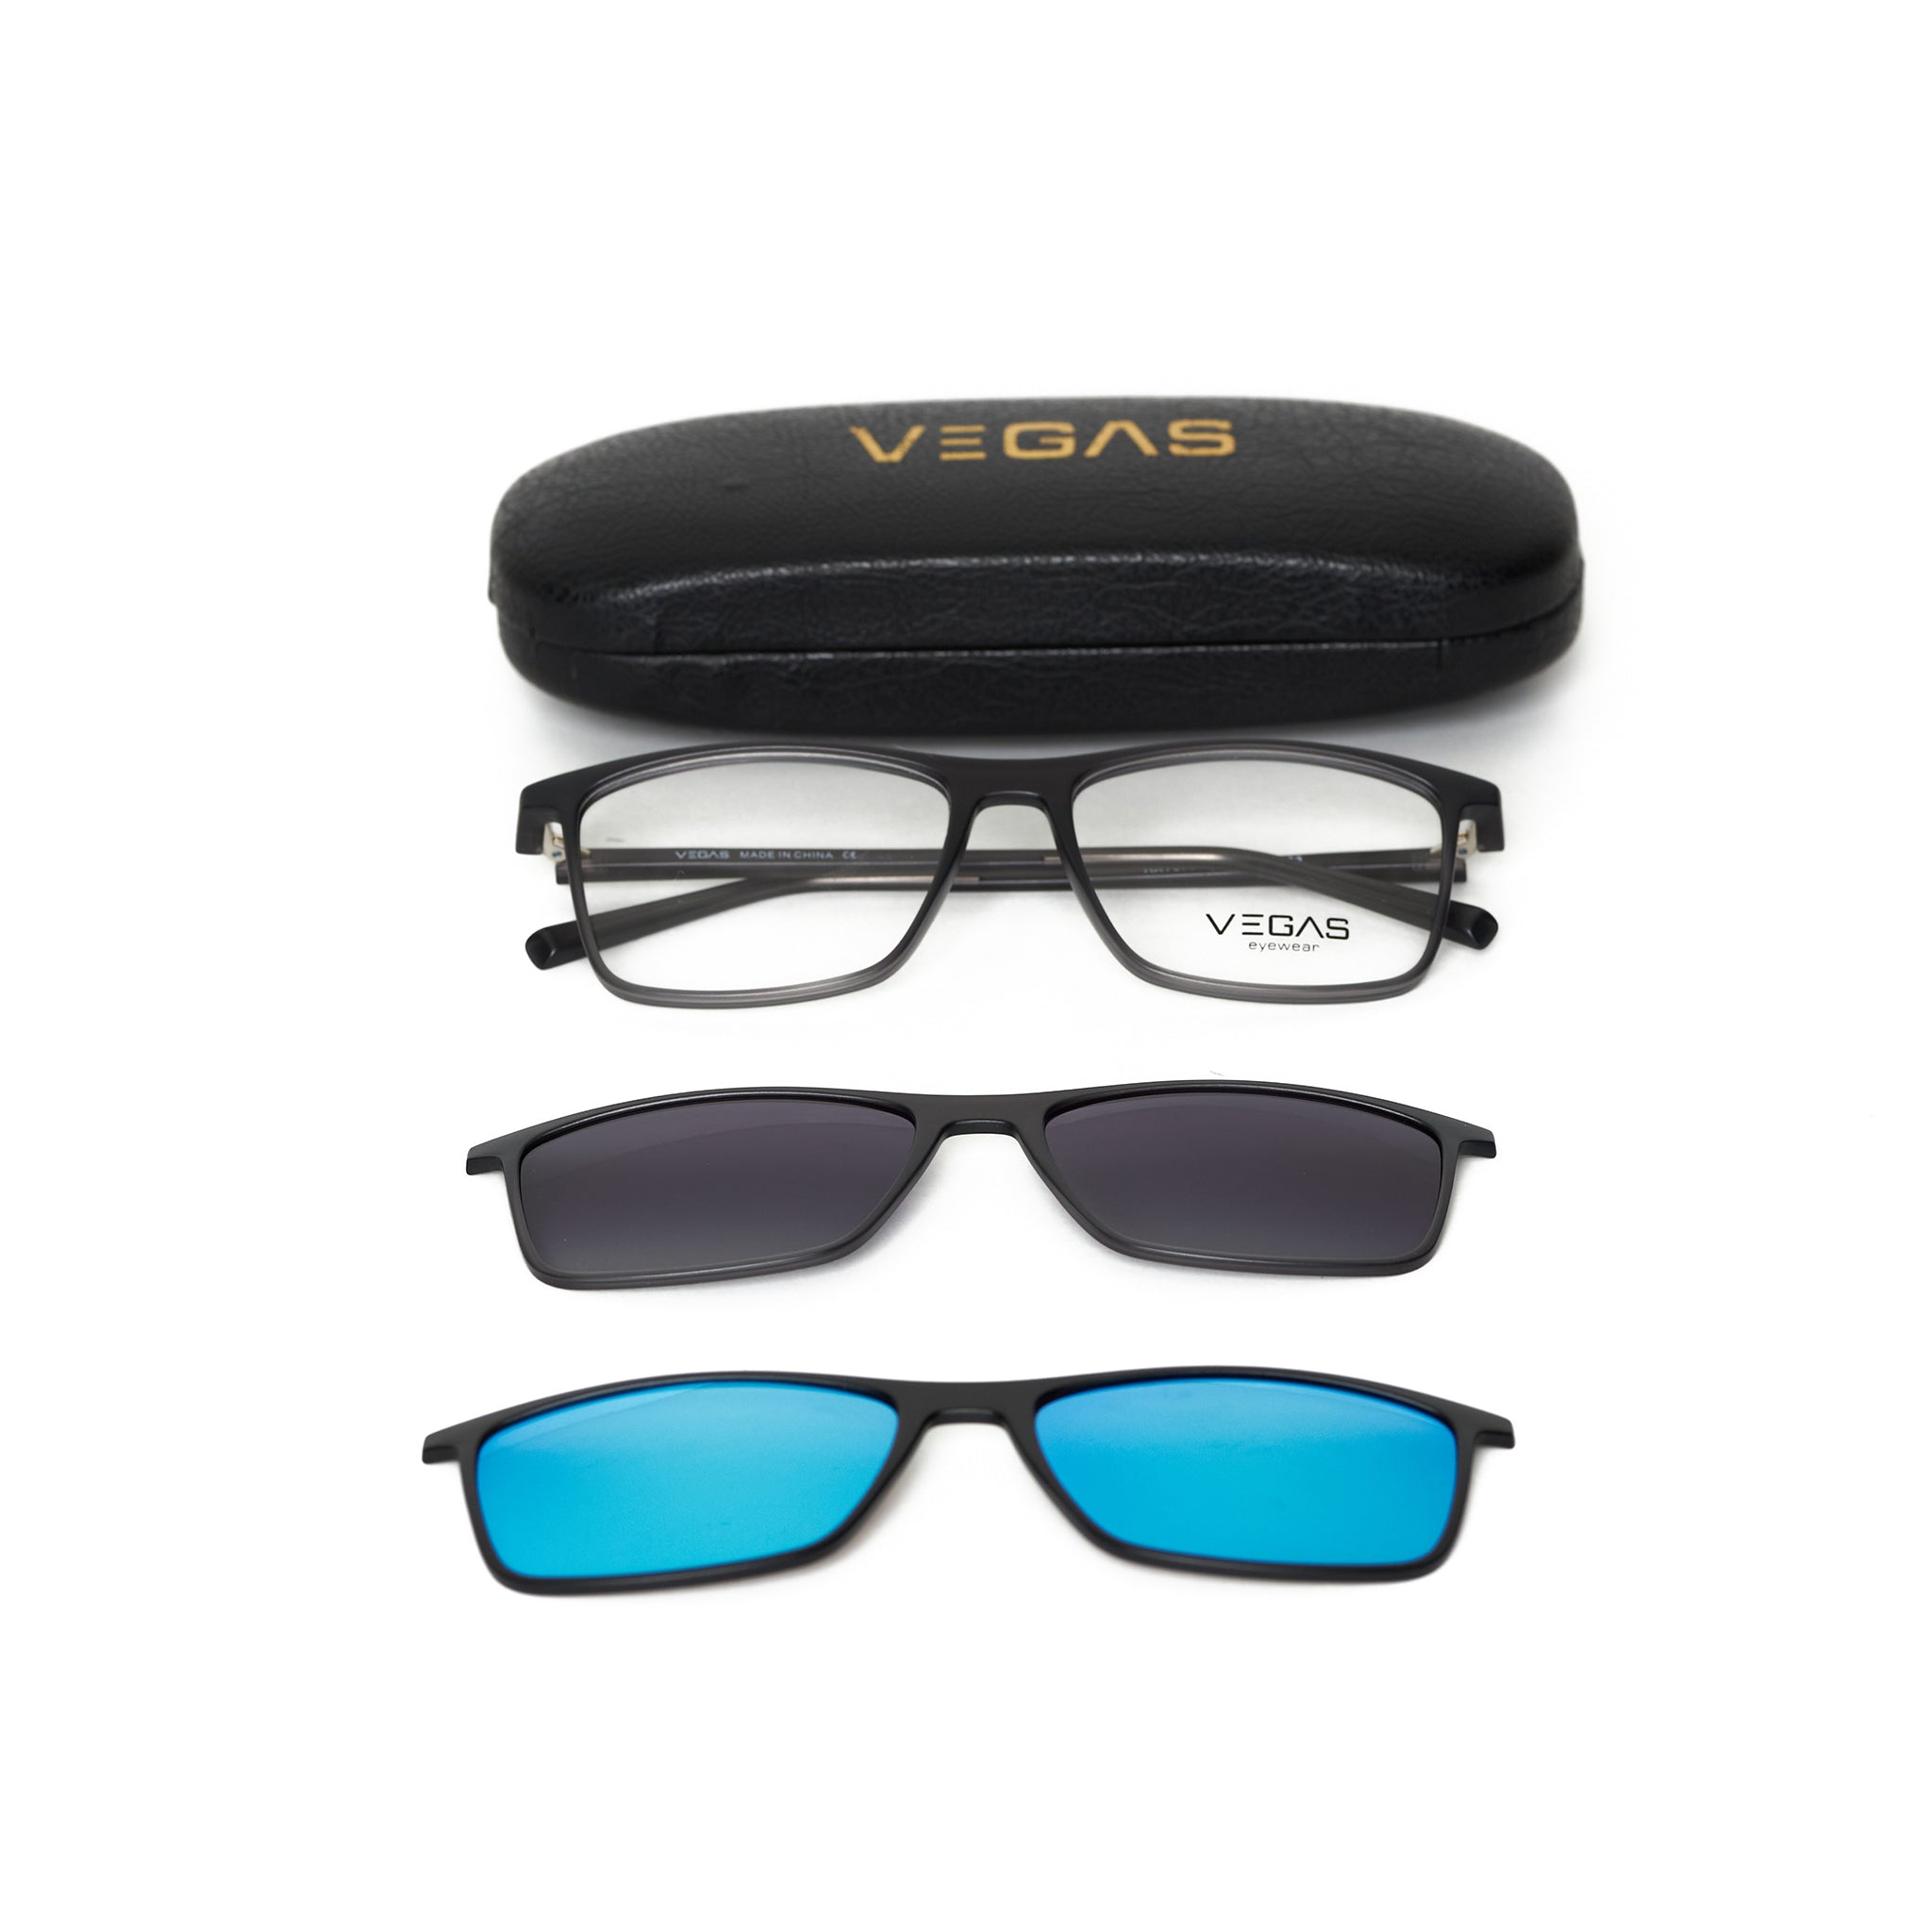 VEGAS RX7076 - COC Eyewear